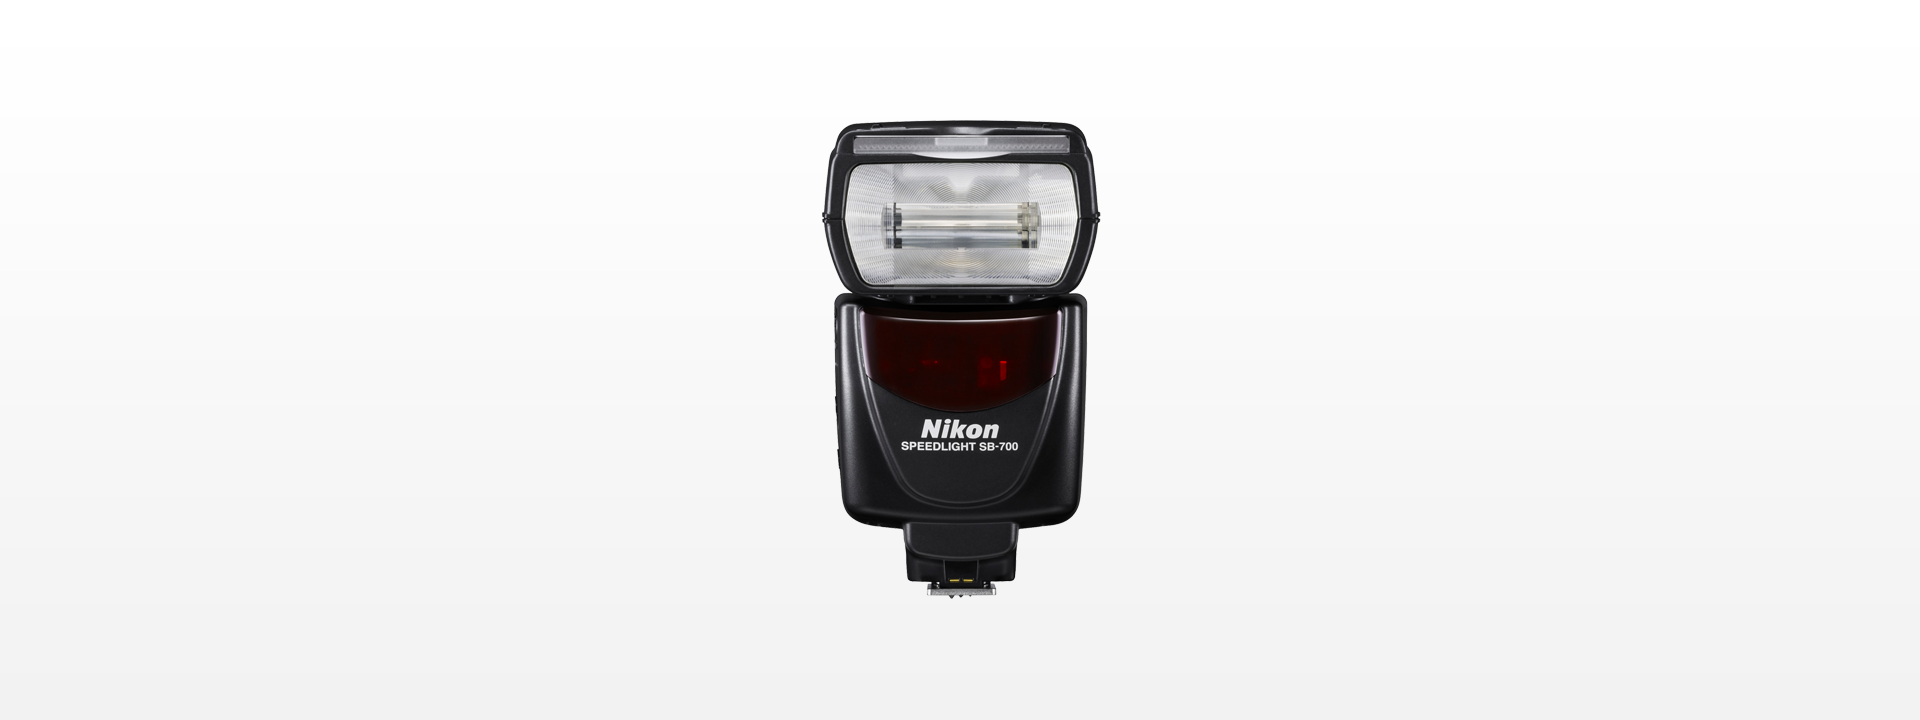 ライトブラウン/ブラック Nikon フラッシュ スピードライト SB-700